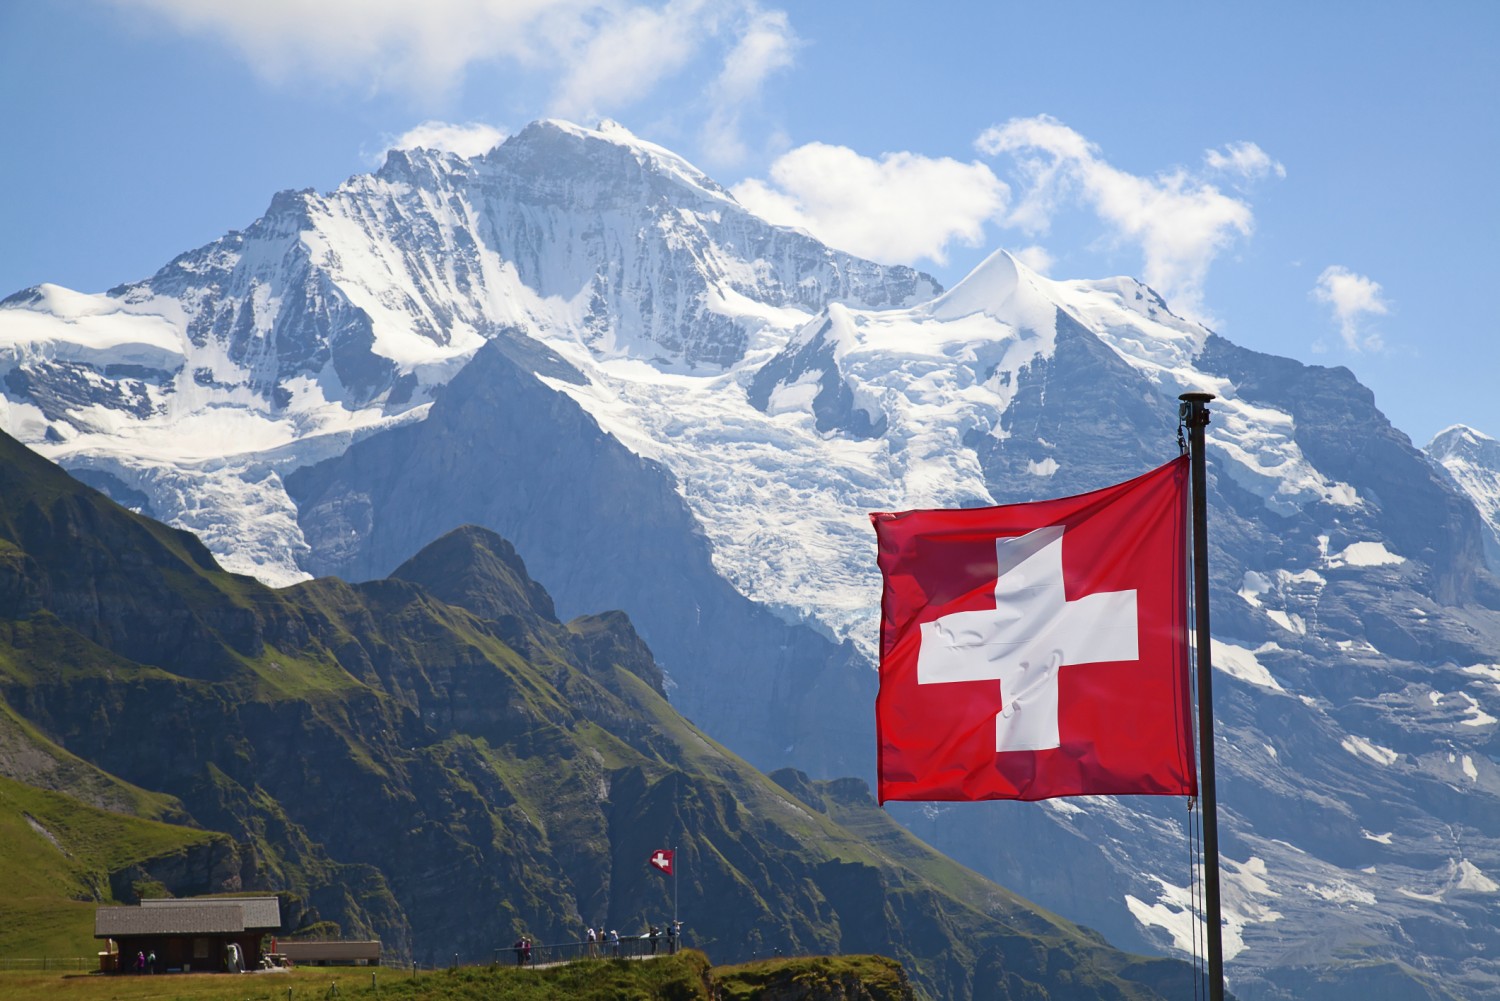 Đi tìm bình yên với những điểm đến xinh đẹp tại Thụy Sĩ